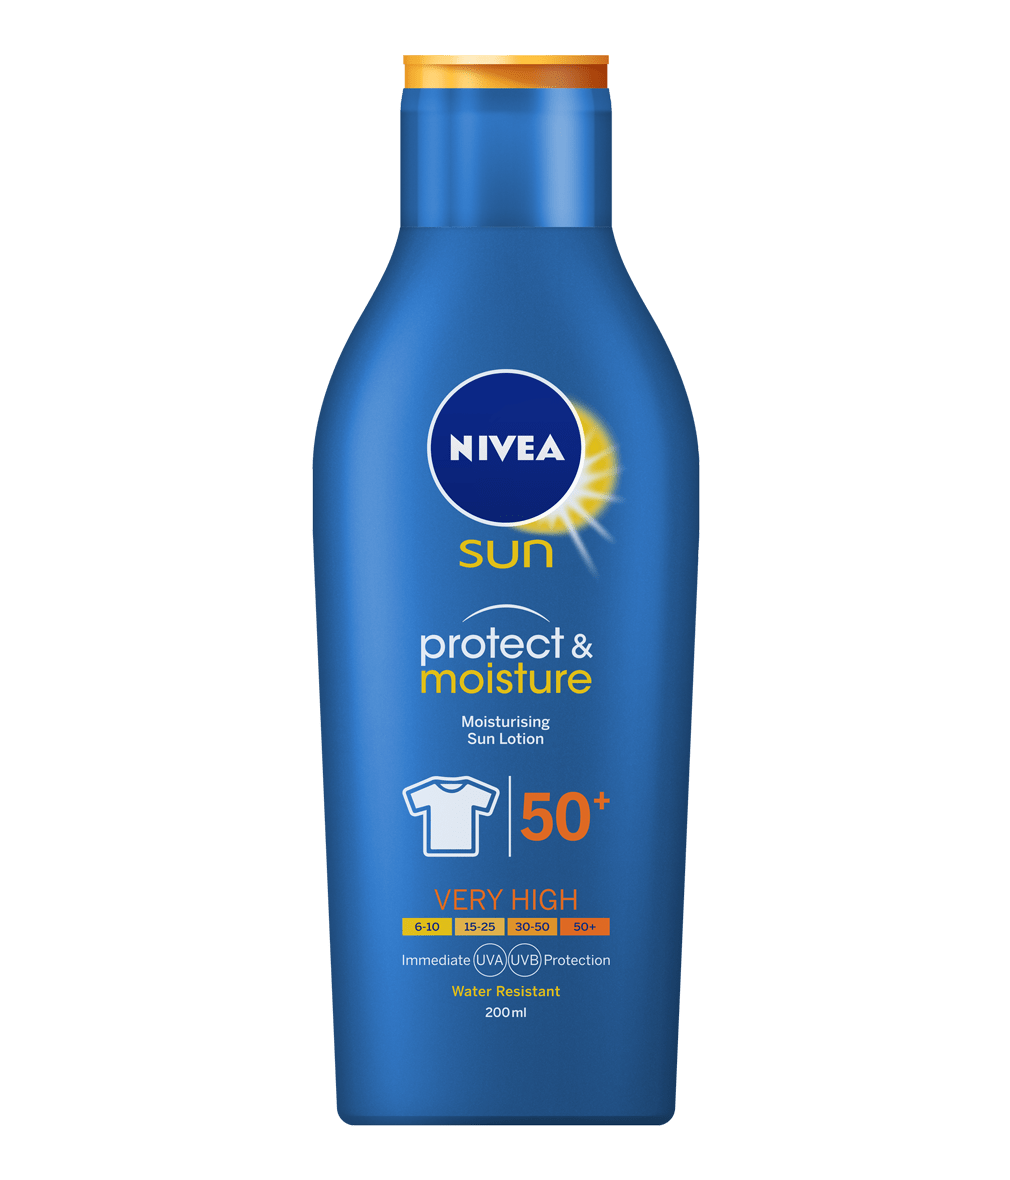  NIVEA  SUN Protect Moisture Lotion SPF 50 